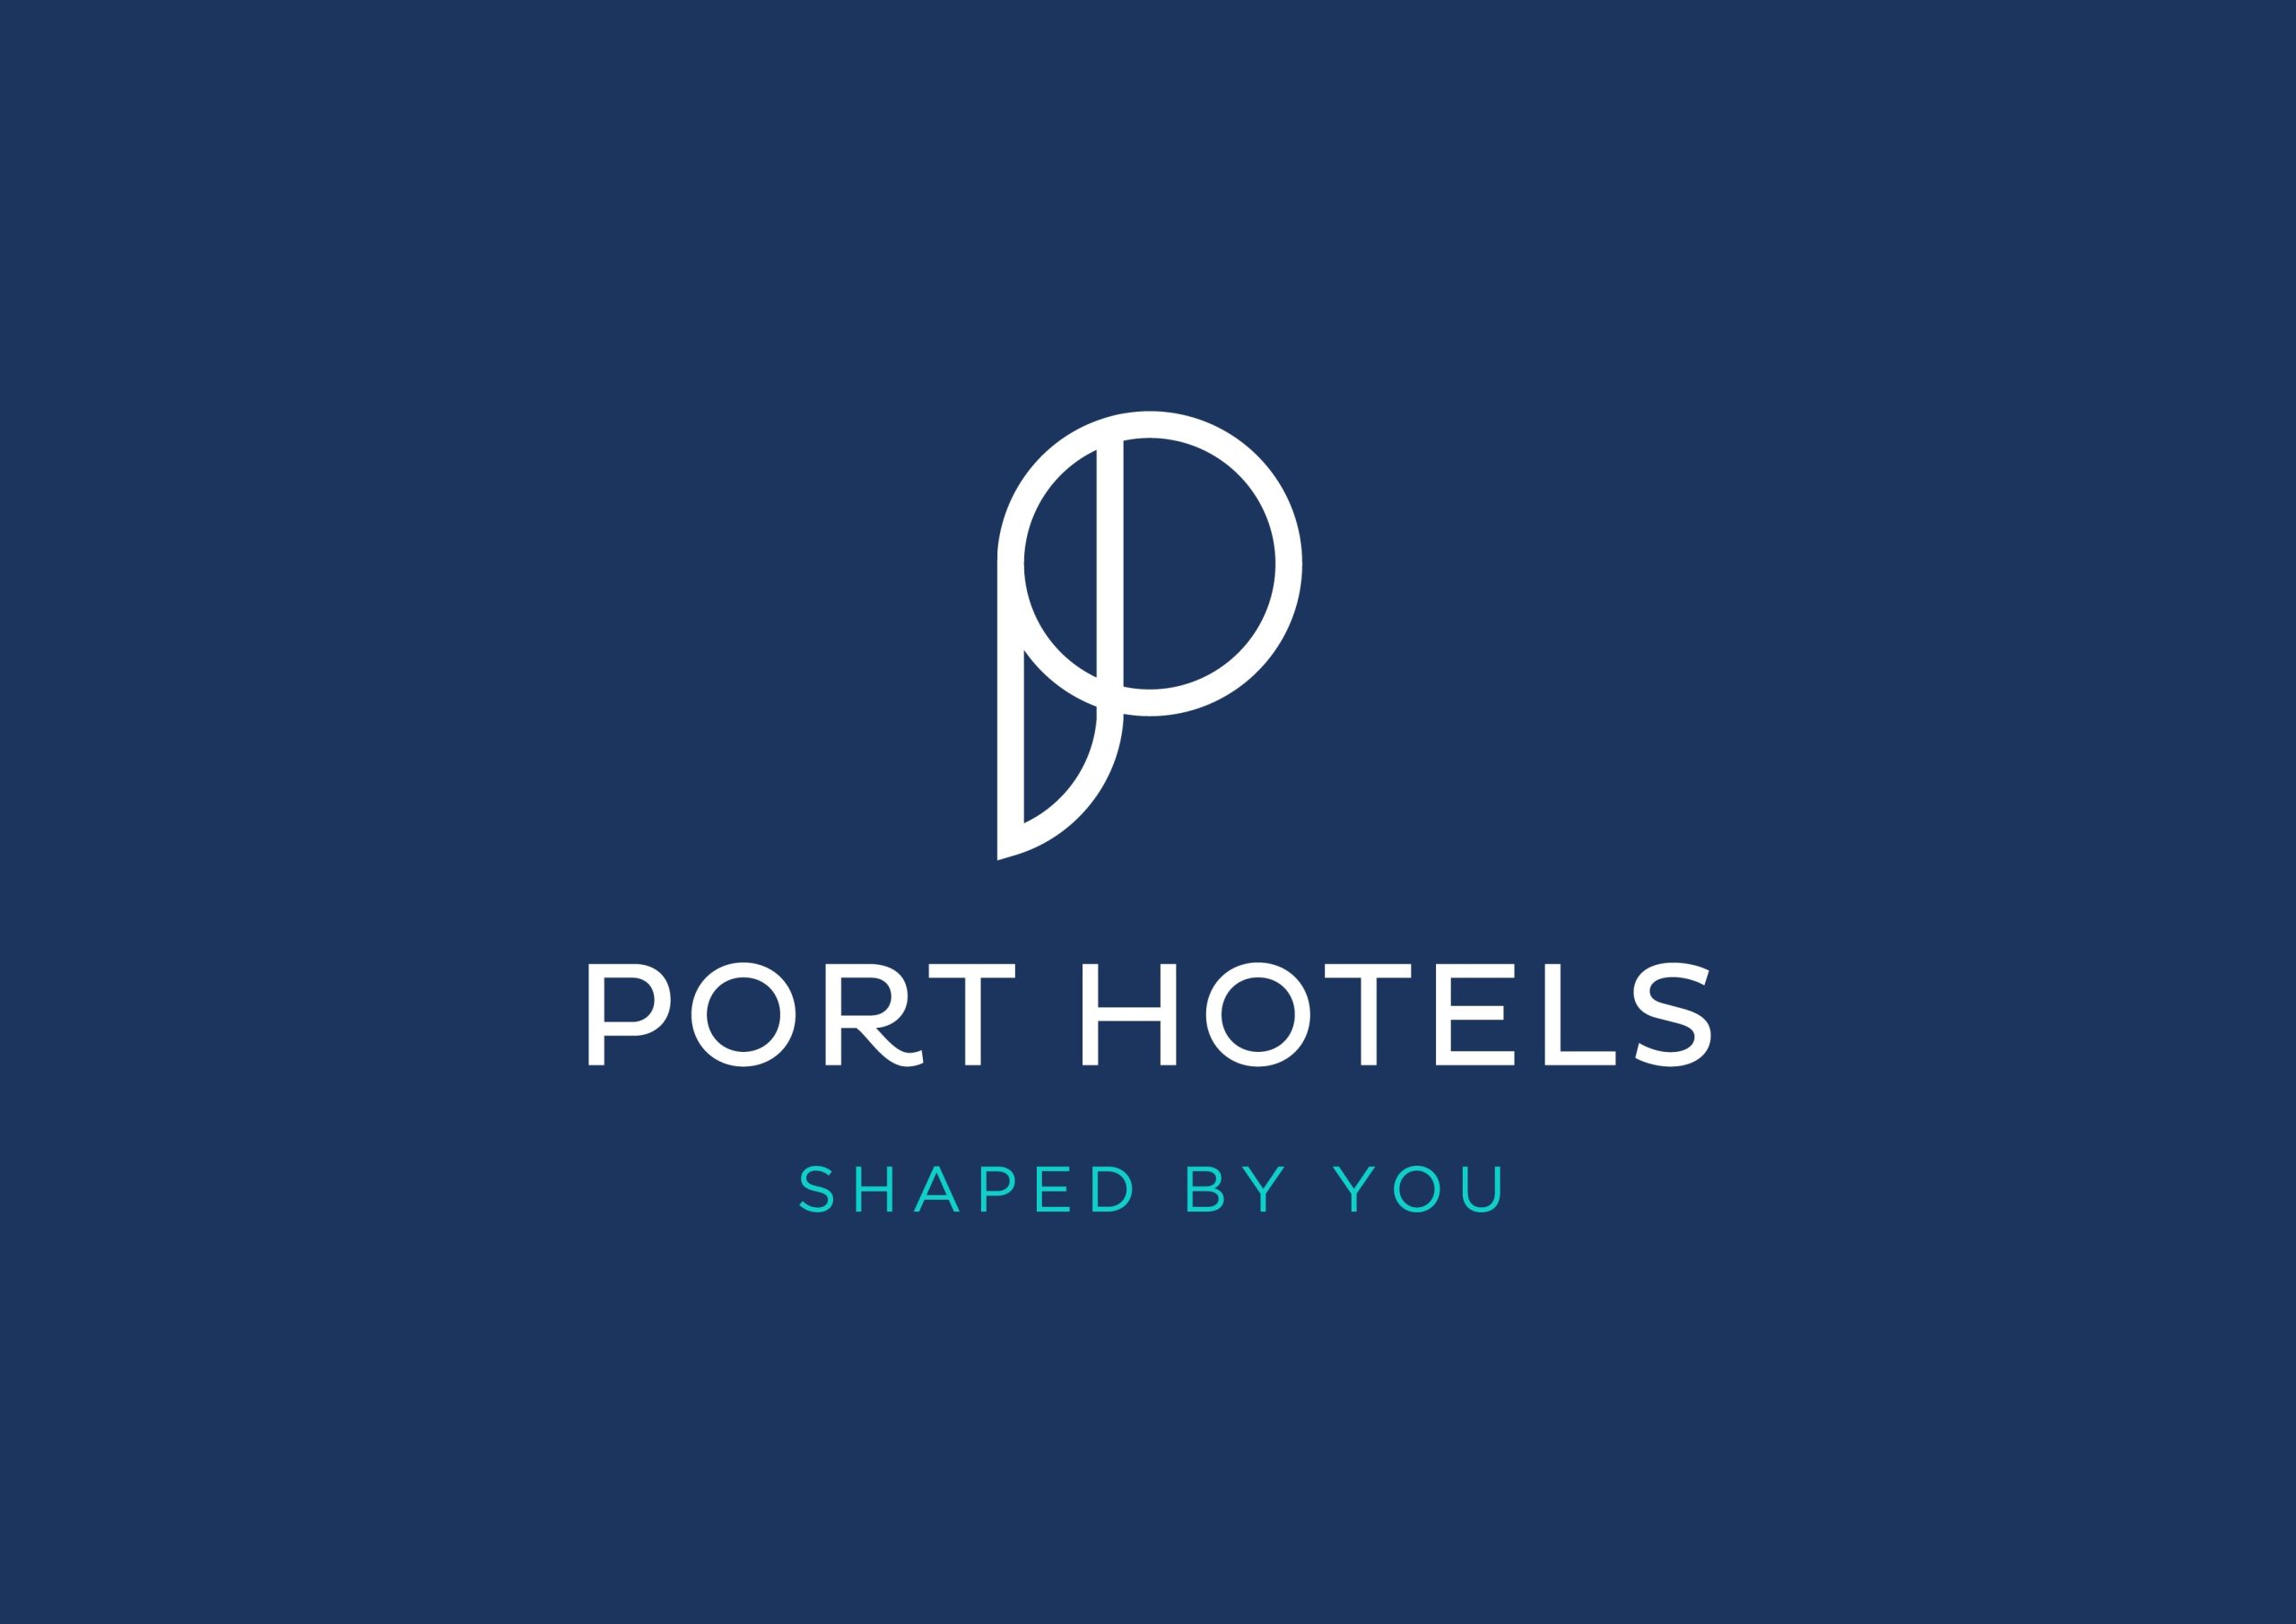 PORT HOTELS